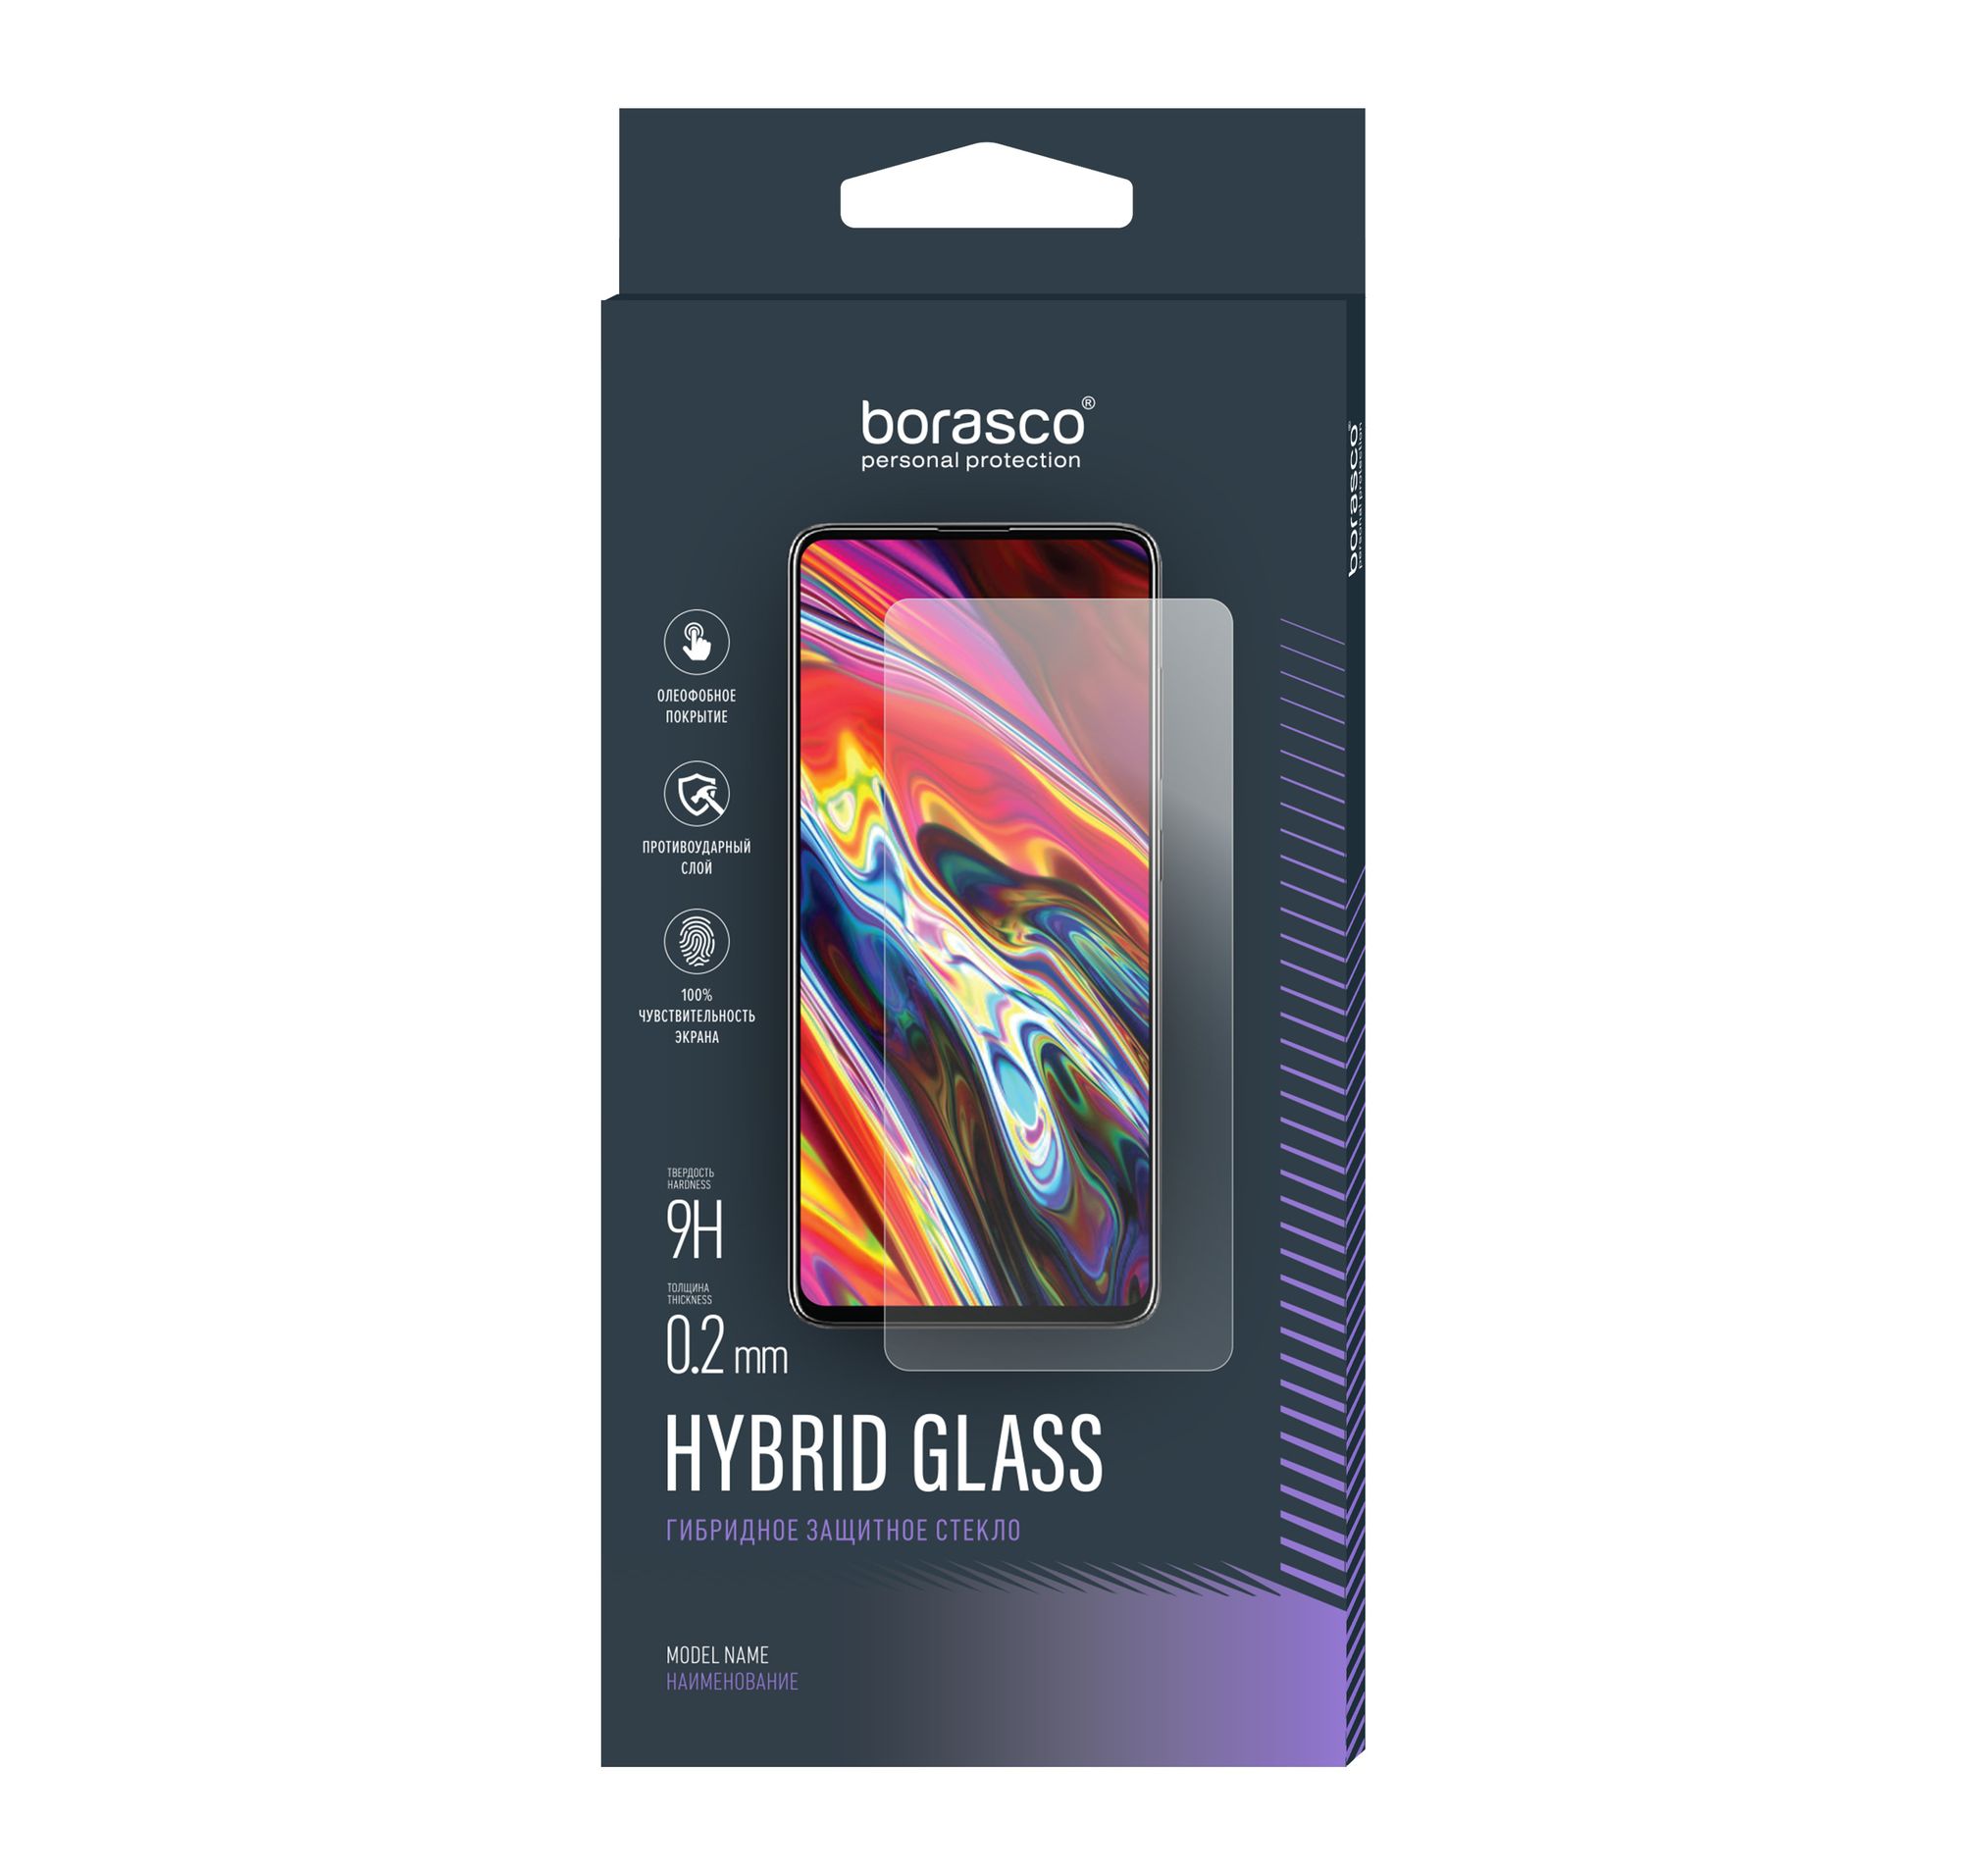 Стекло защитное Hybrid Glass VSP 0,26 мм для iPhone 6 Plus/6S Plus стекло камеры для мобильного телефона смартфона apple iphone 6 plus 6s plus с рамкой золотое